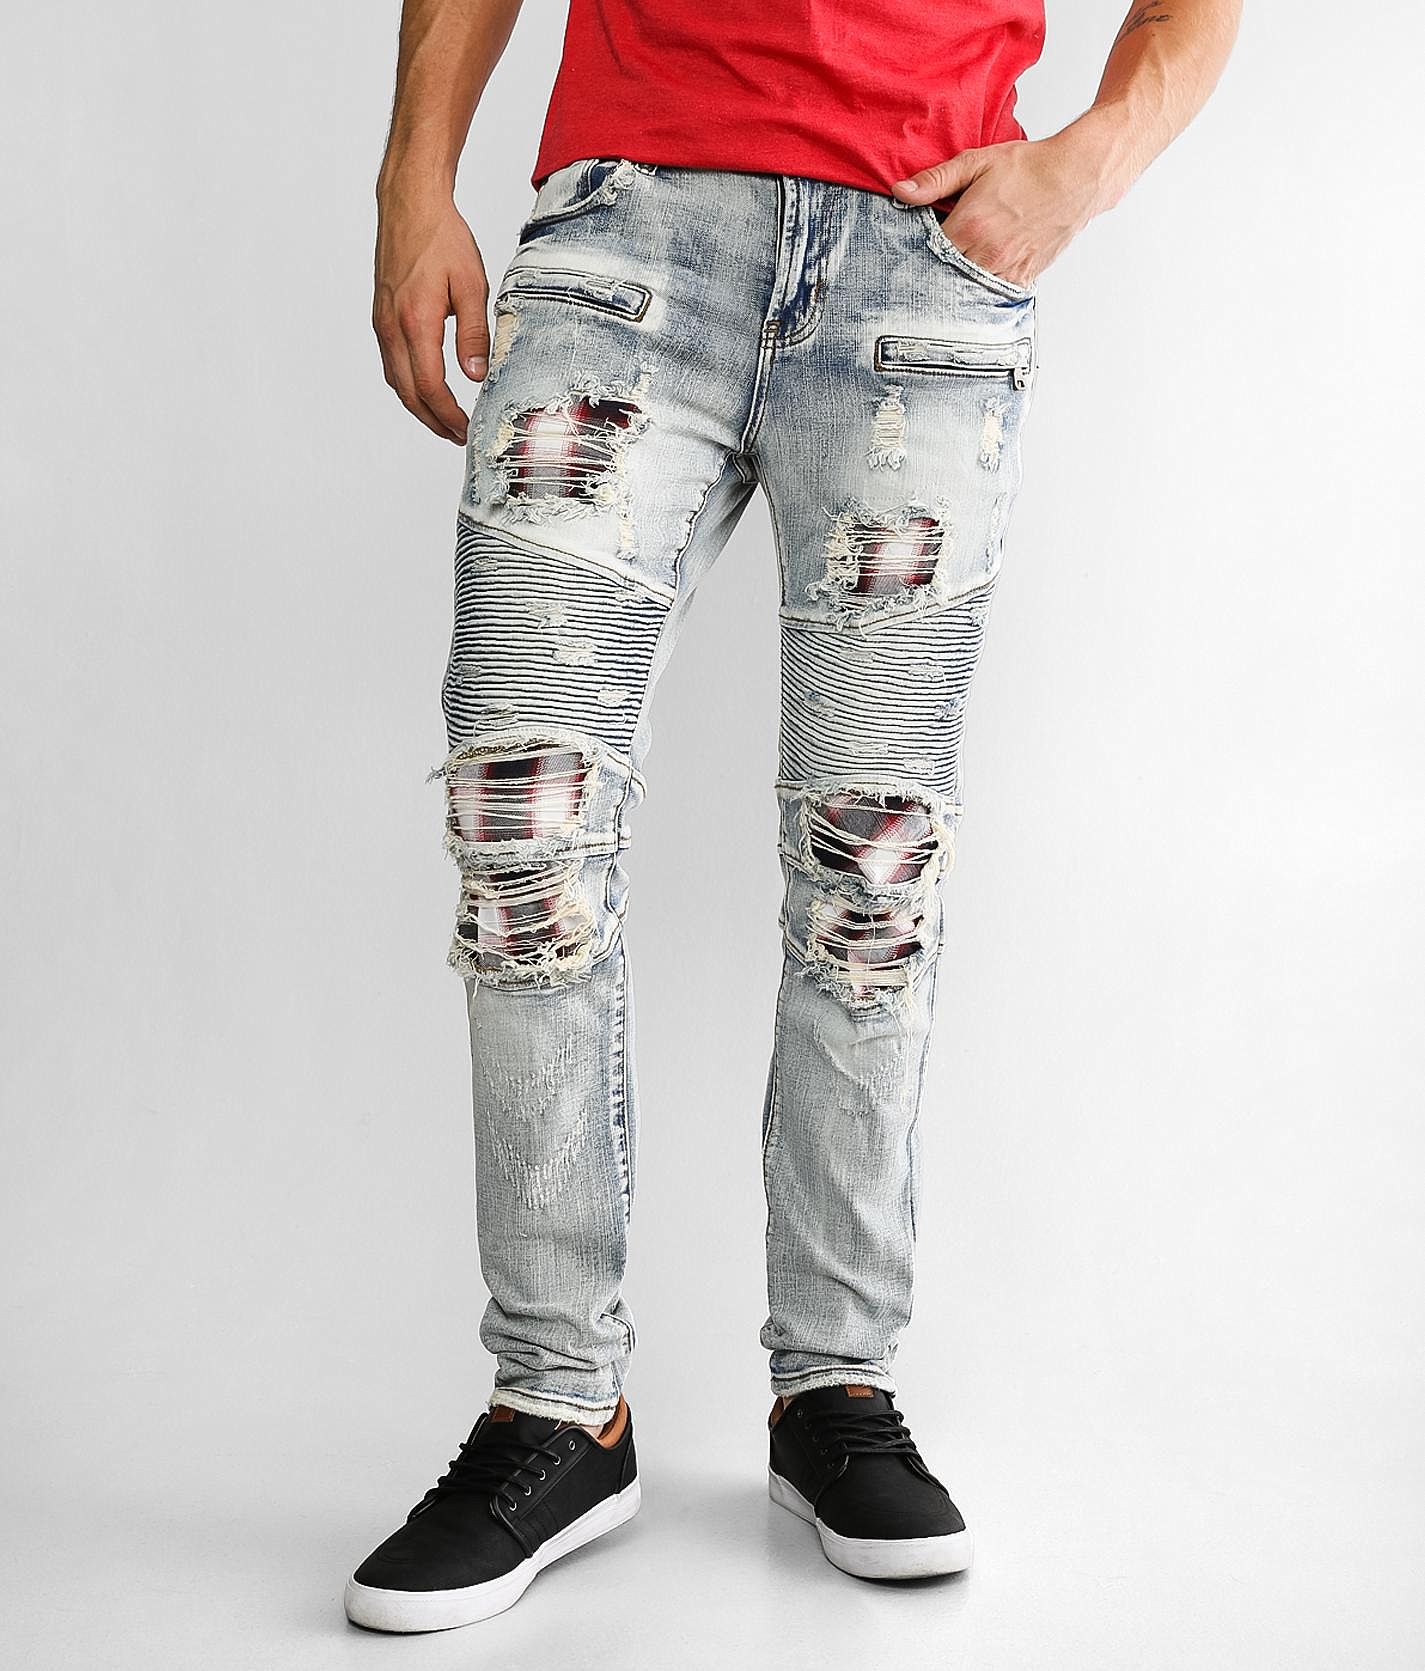 PREME Moto Skinny Stretch Jean - Men\'s Jeans in Indigo | Buckle